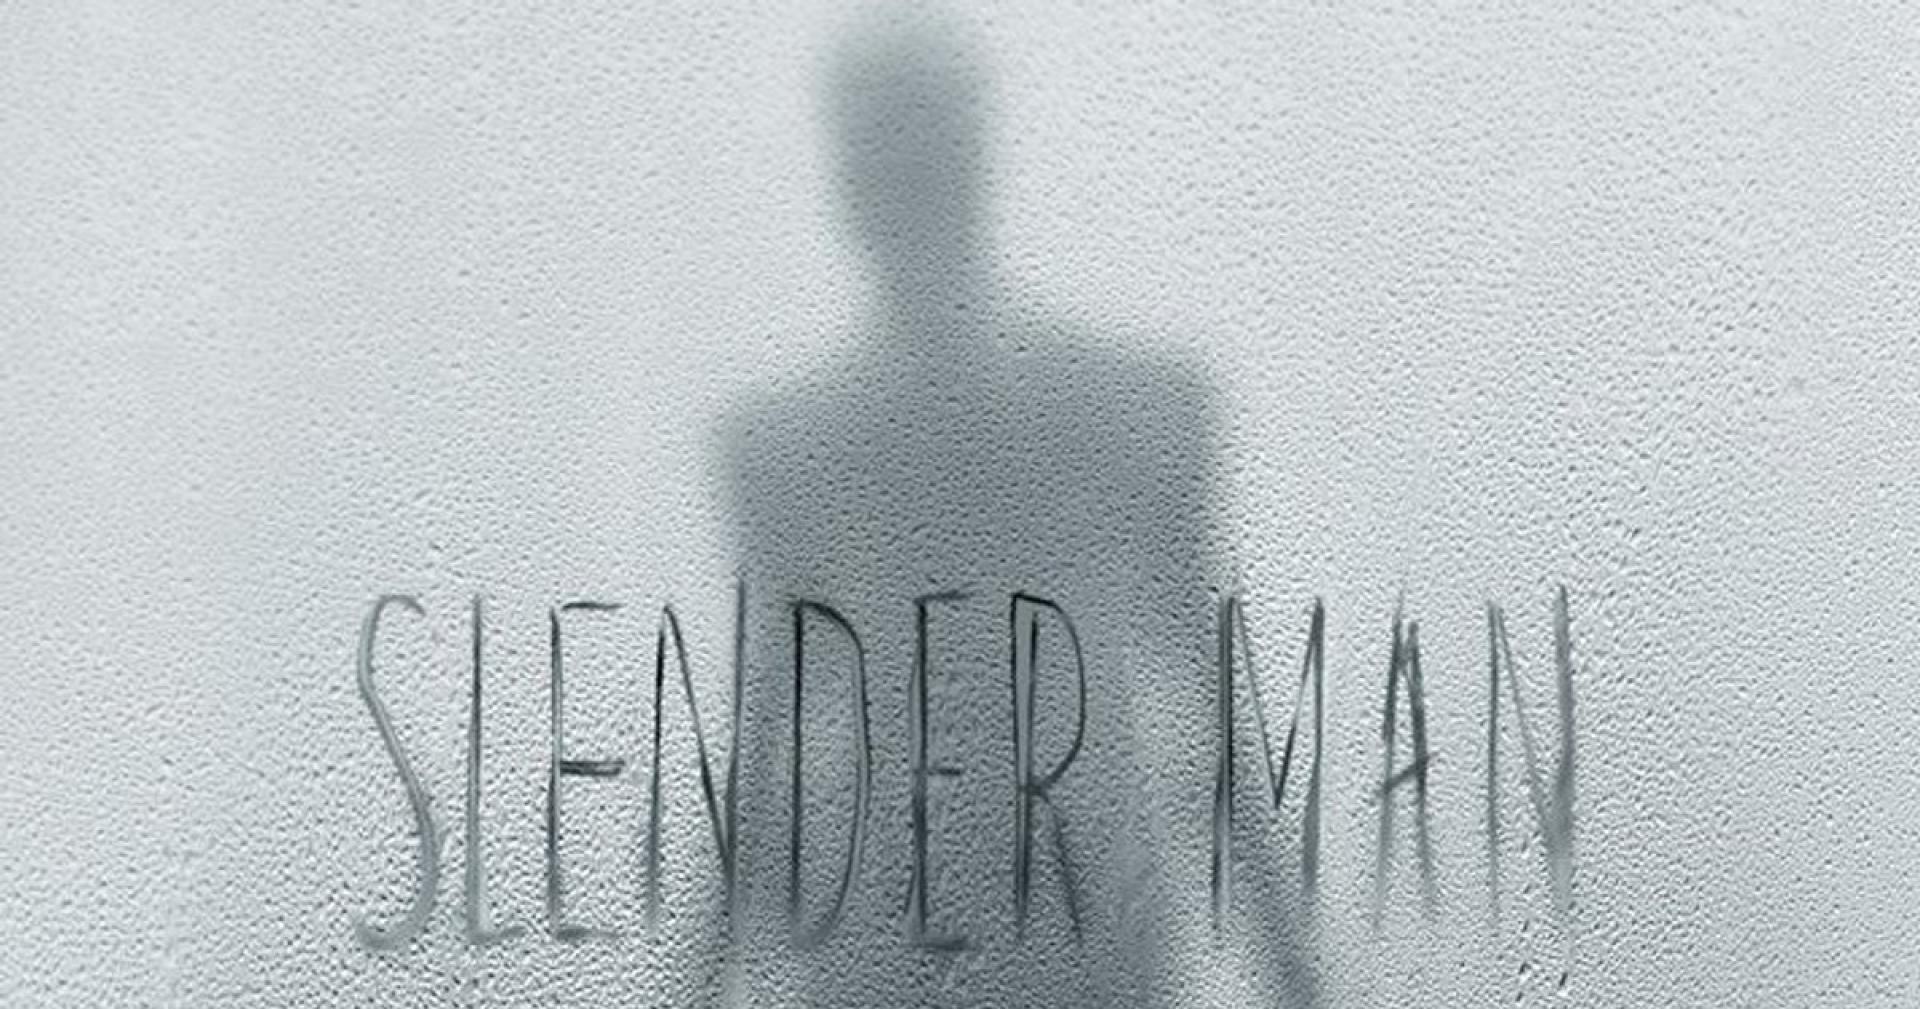 Slender Man - Az ismeretlen rém (2018)